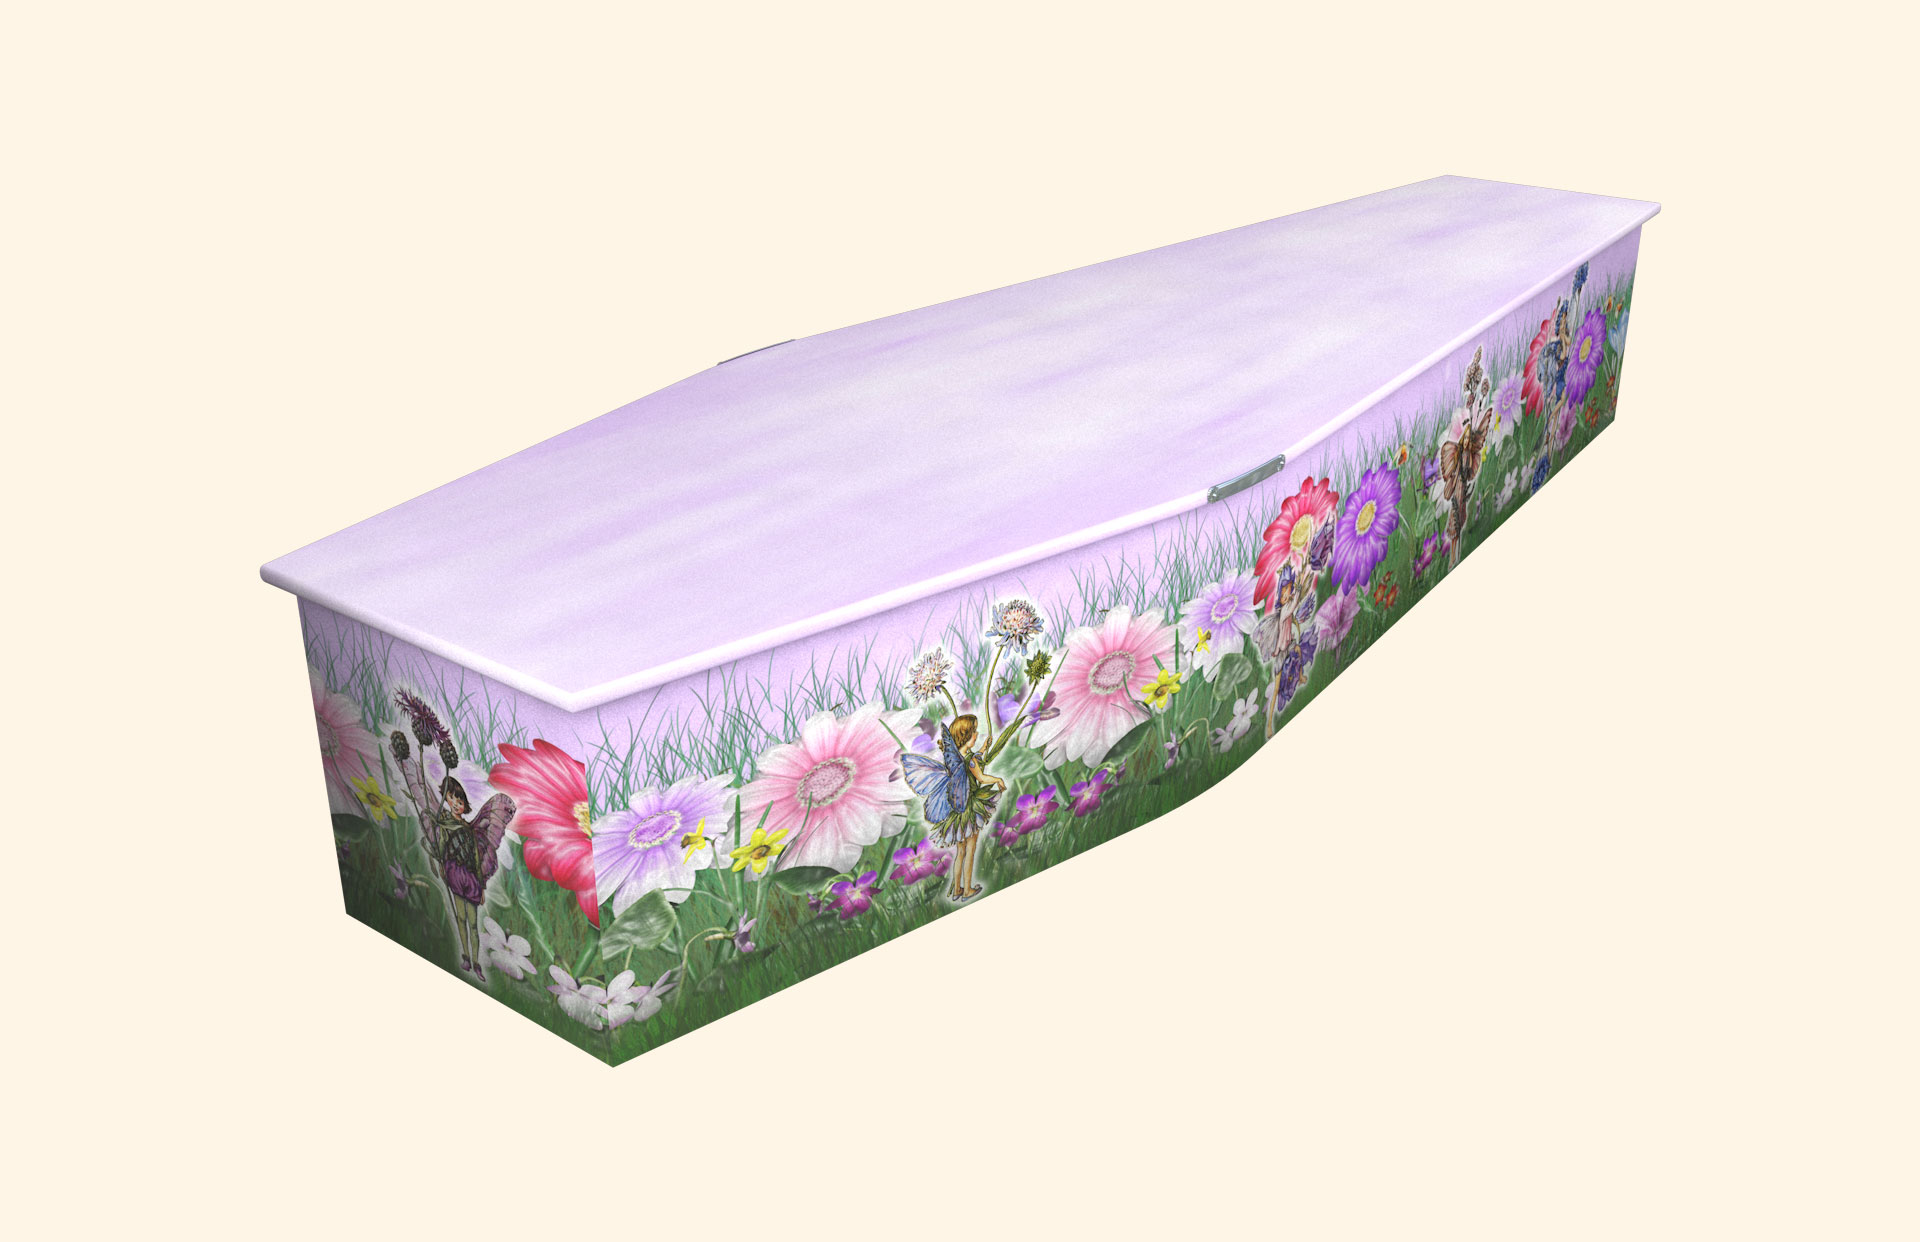 Fairy Garden design on a traditional coffin